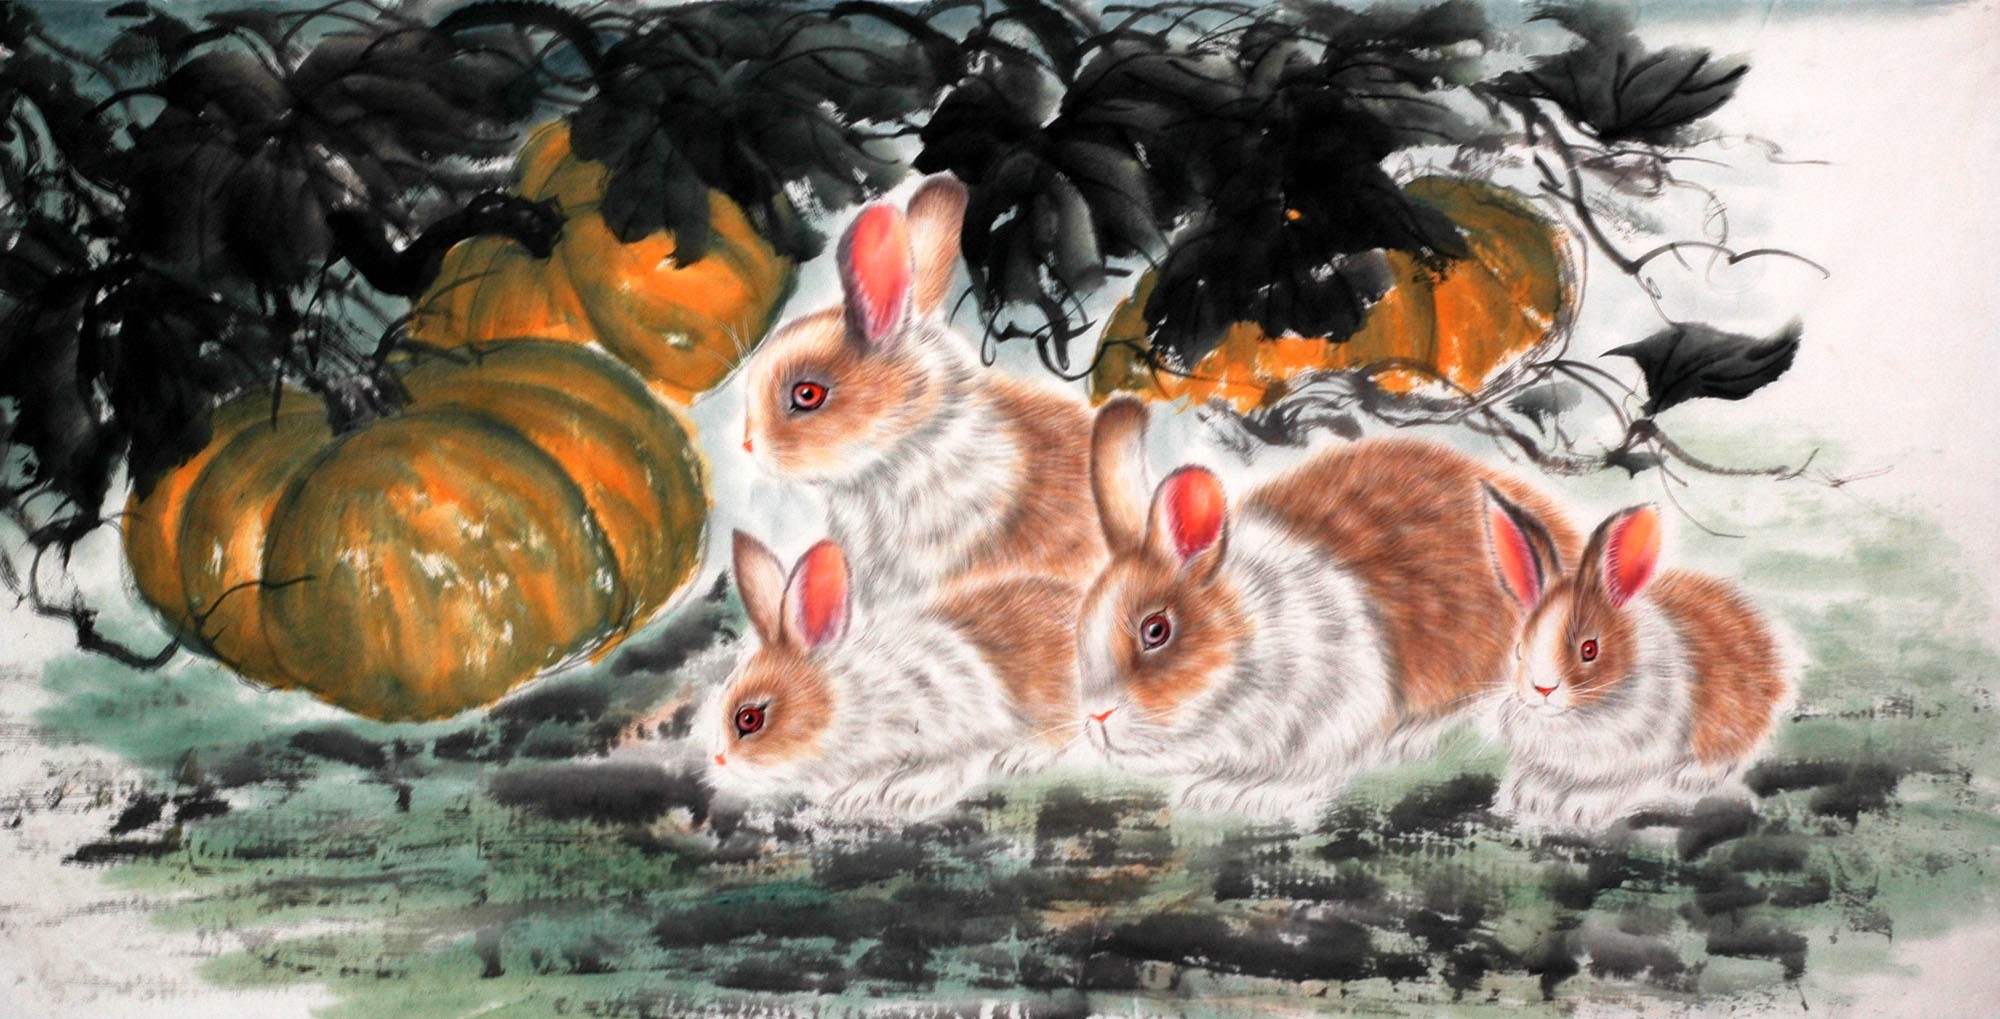 Chinese Rabbit Painting - CNAG015200